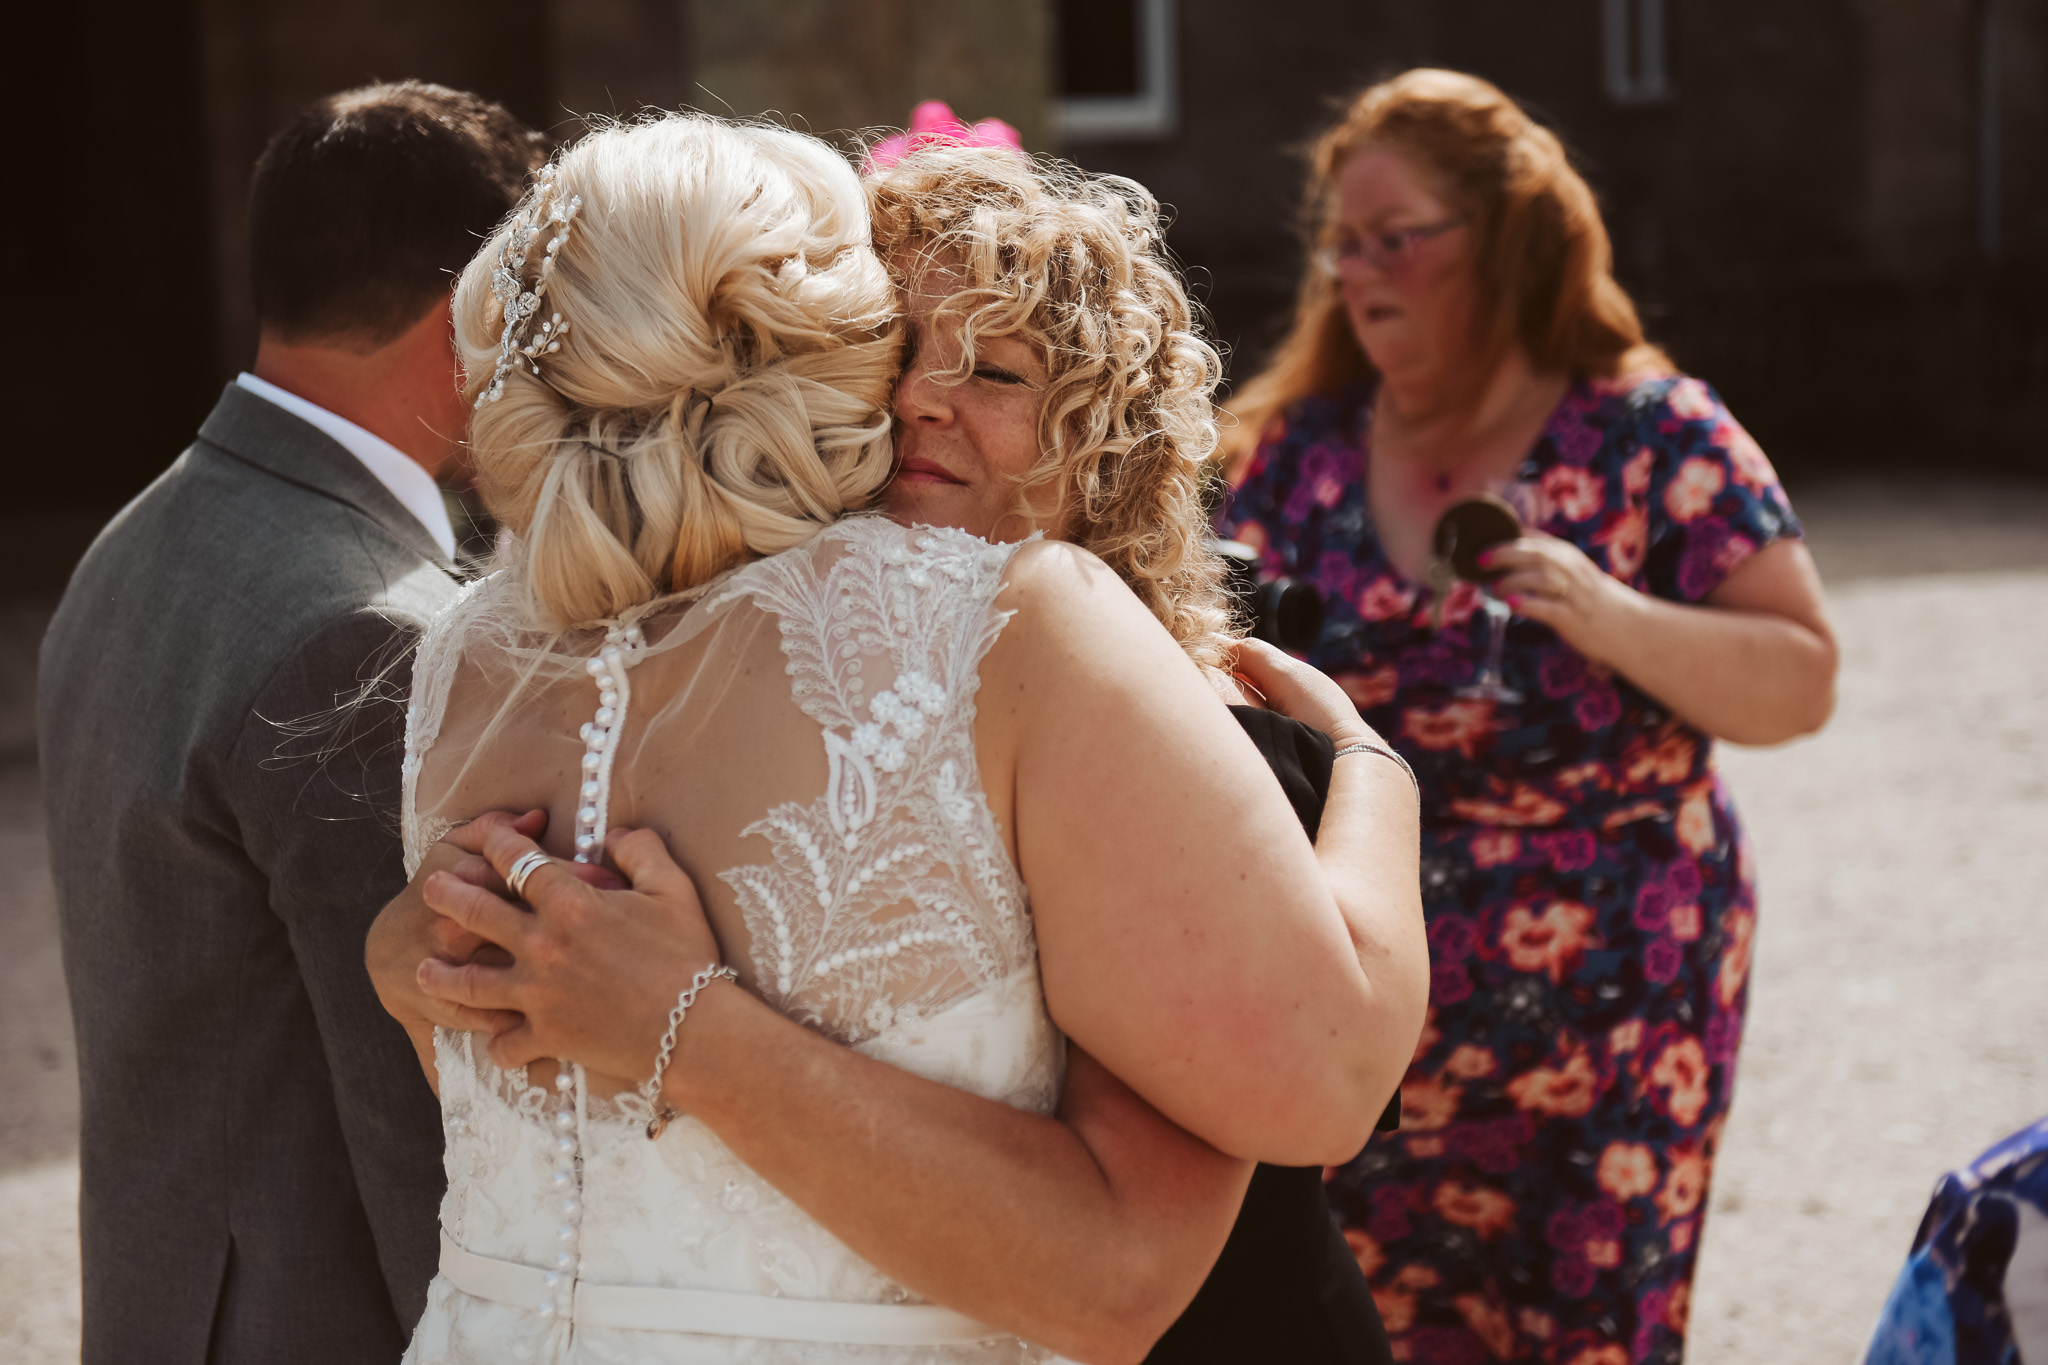 Wedding guests hugging bride